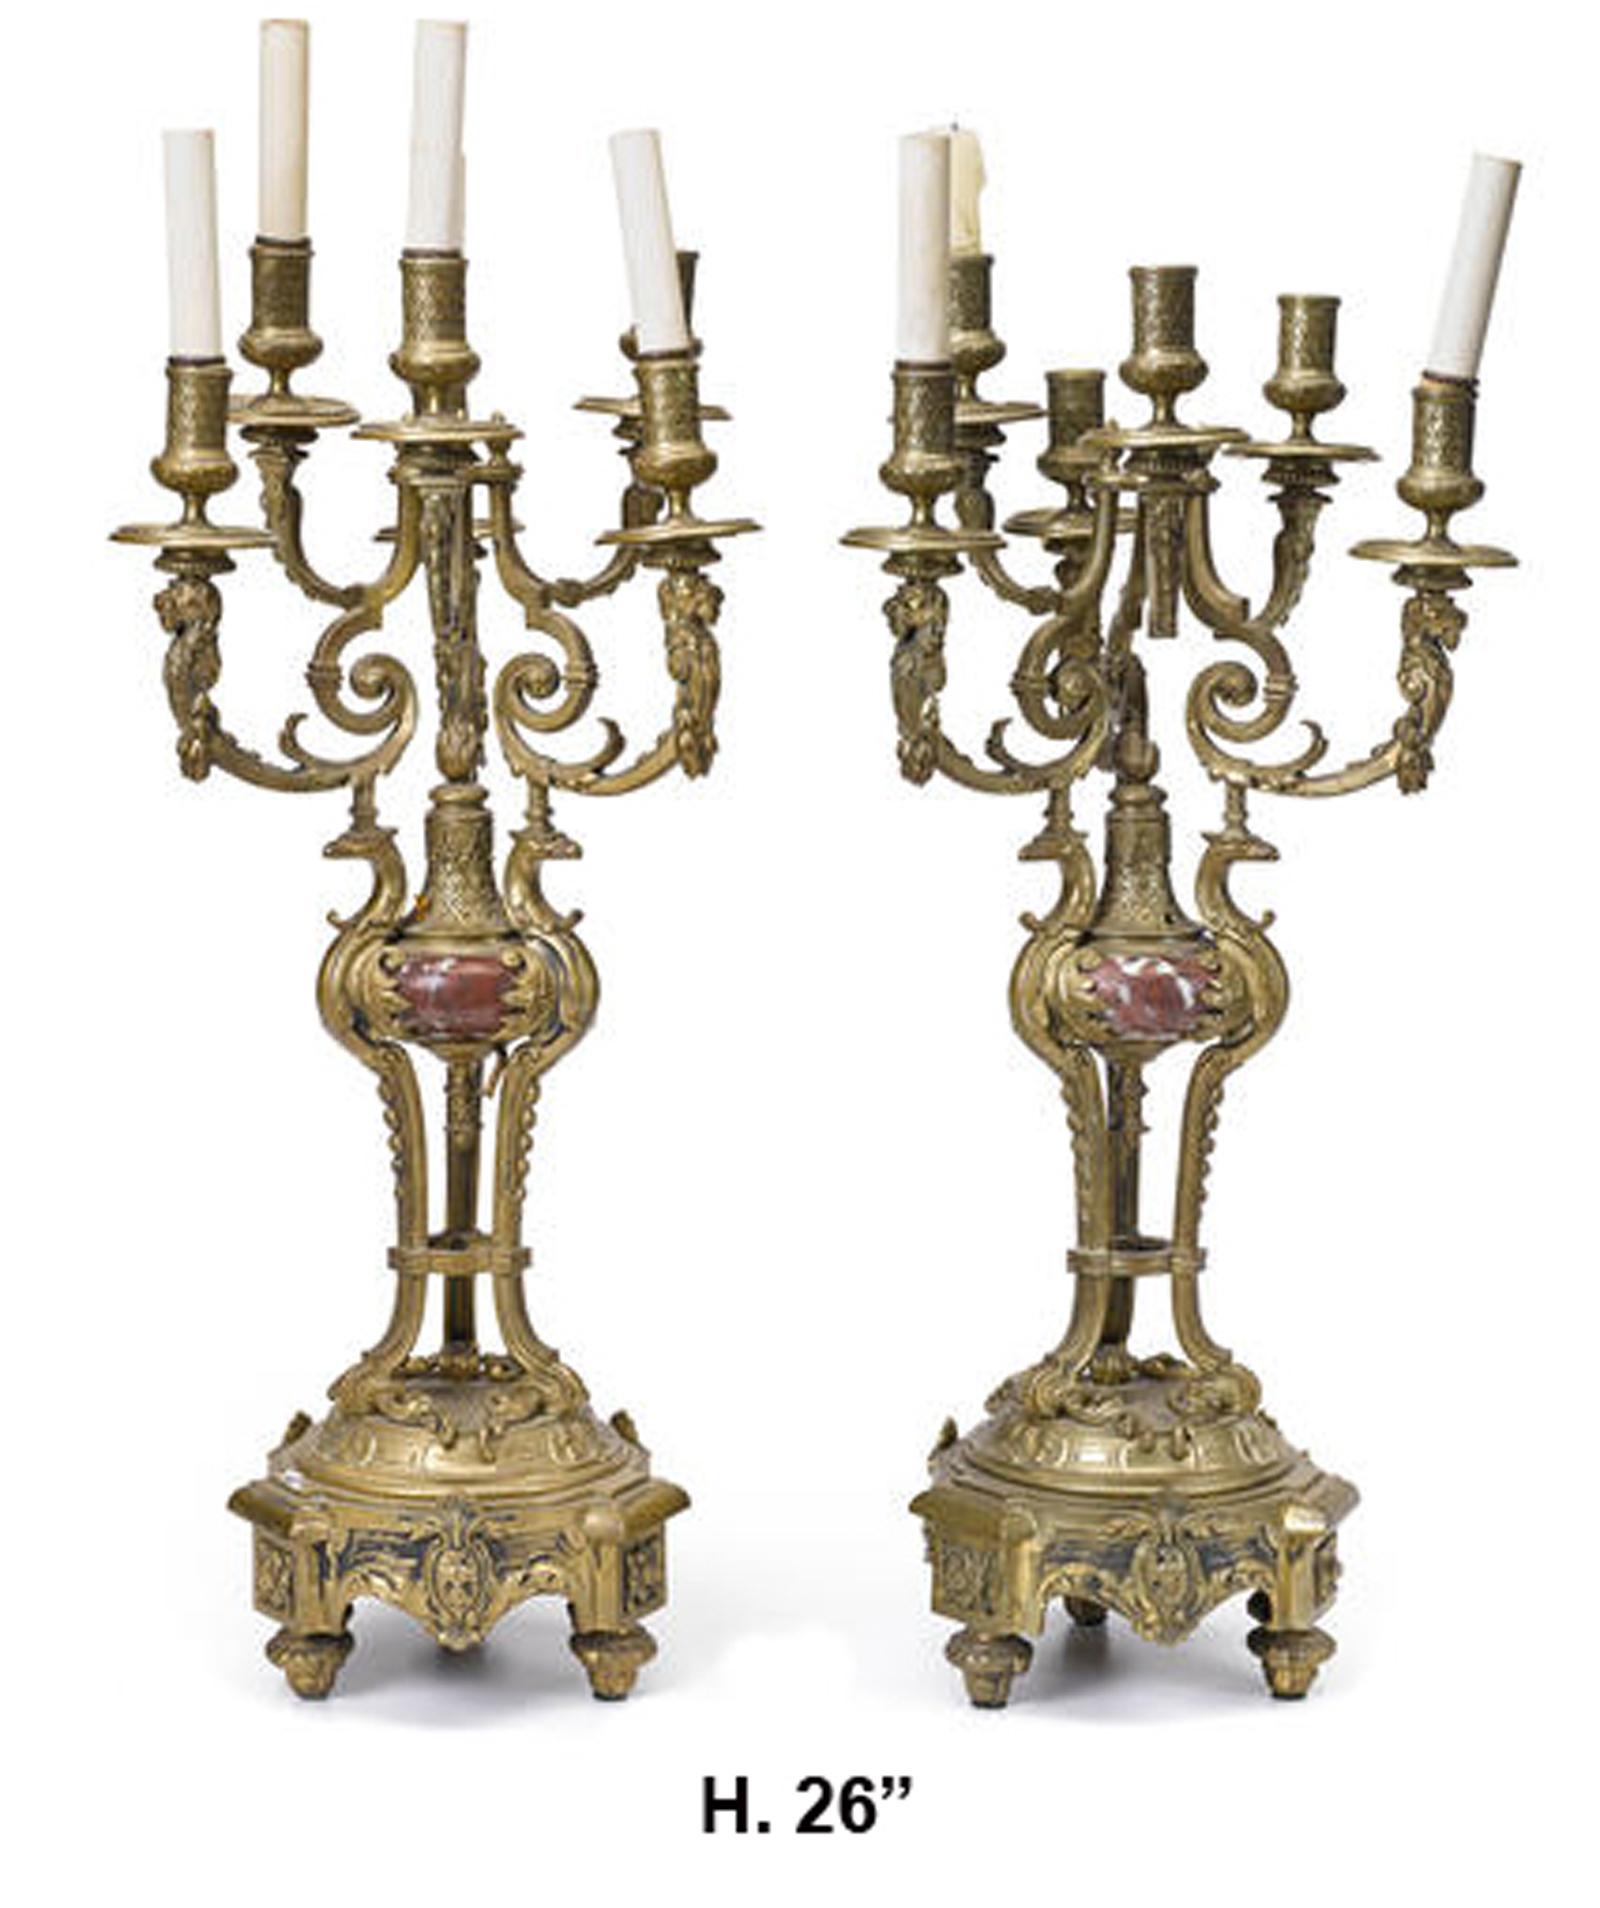 Beeindruckendes Paar französischer Kandelaber im Stil Louis XV aus vergoldeter Bronze und rotem Marmor mit sechs Lichtern,
19. Jahrhundert.

Jeder Kandelaber besteht aus fünf vergoldeten Bronzearmen, die in einer Schale und einem Kerzenhalter